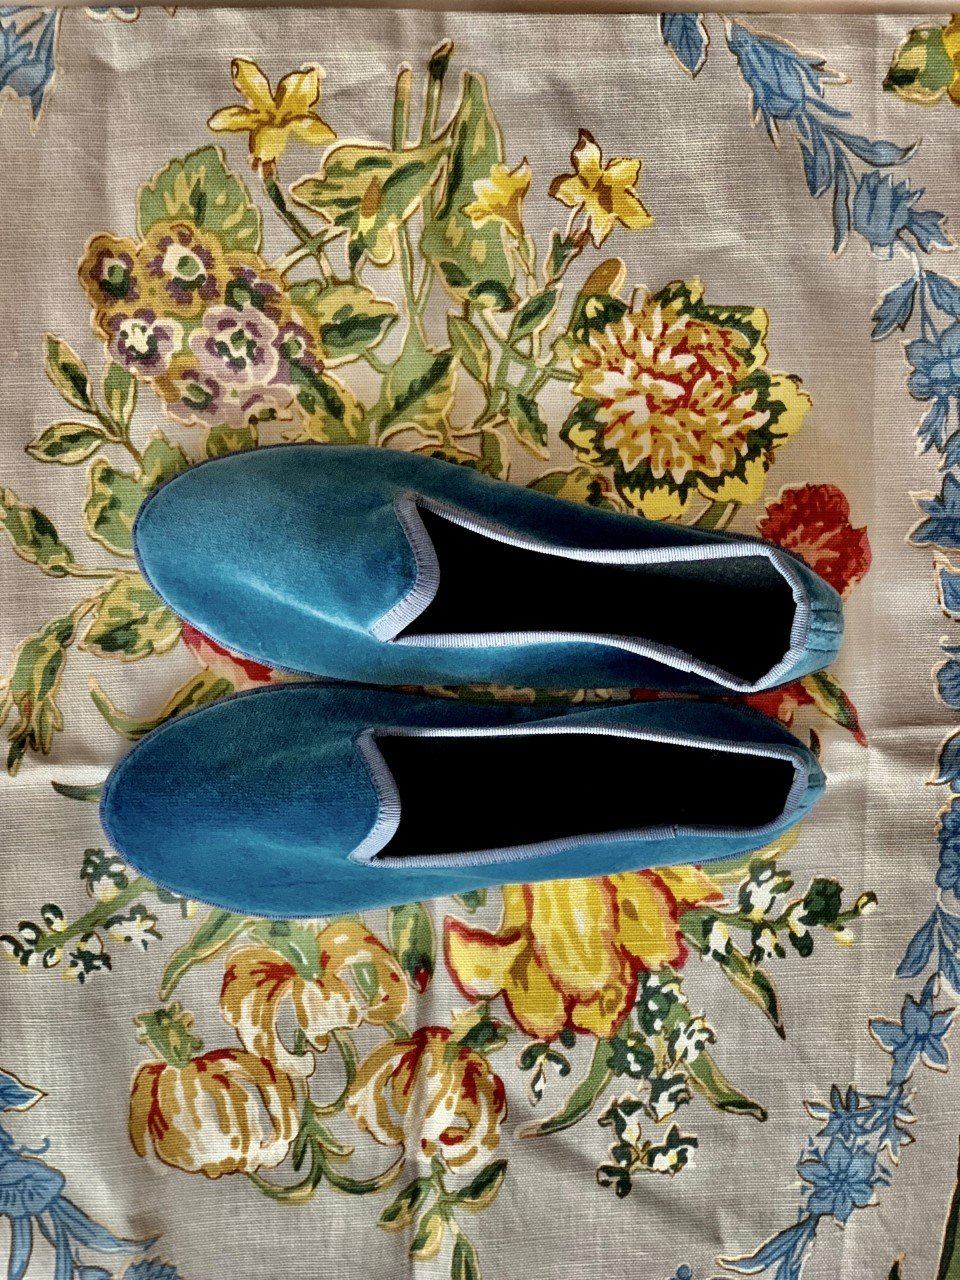 Veneziane velvet slippers/shoes